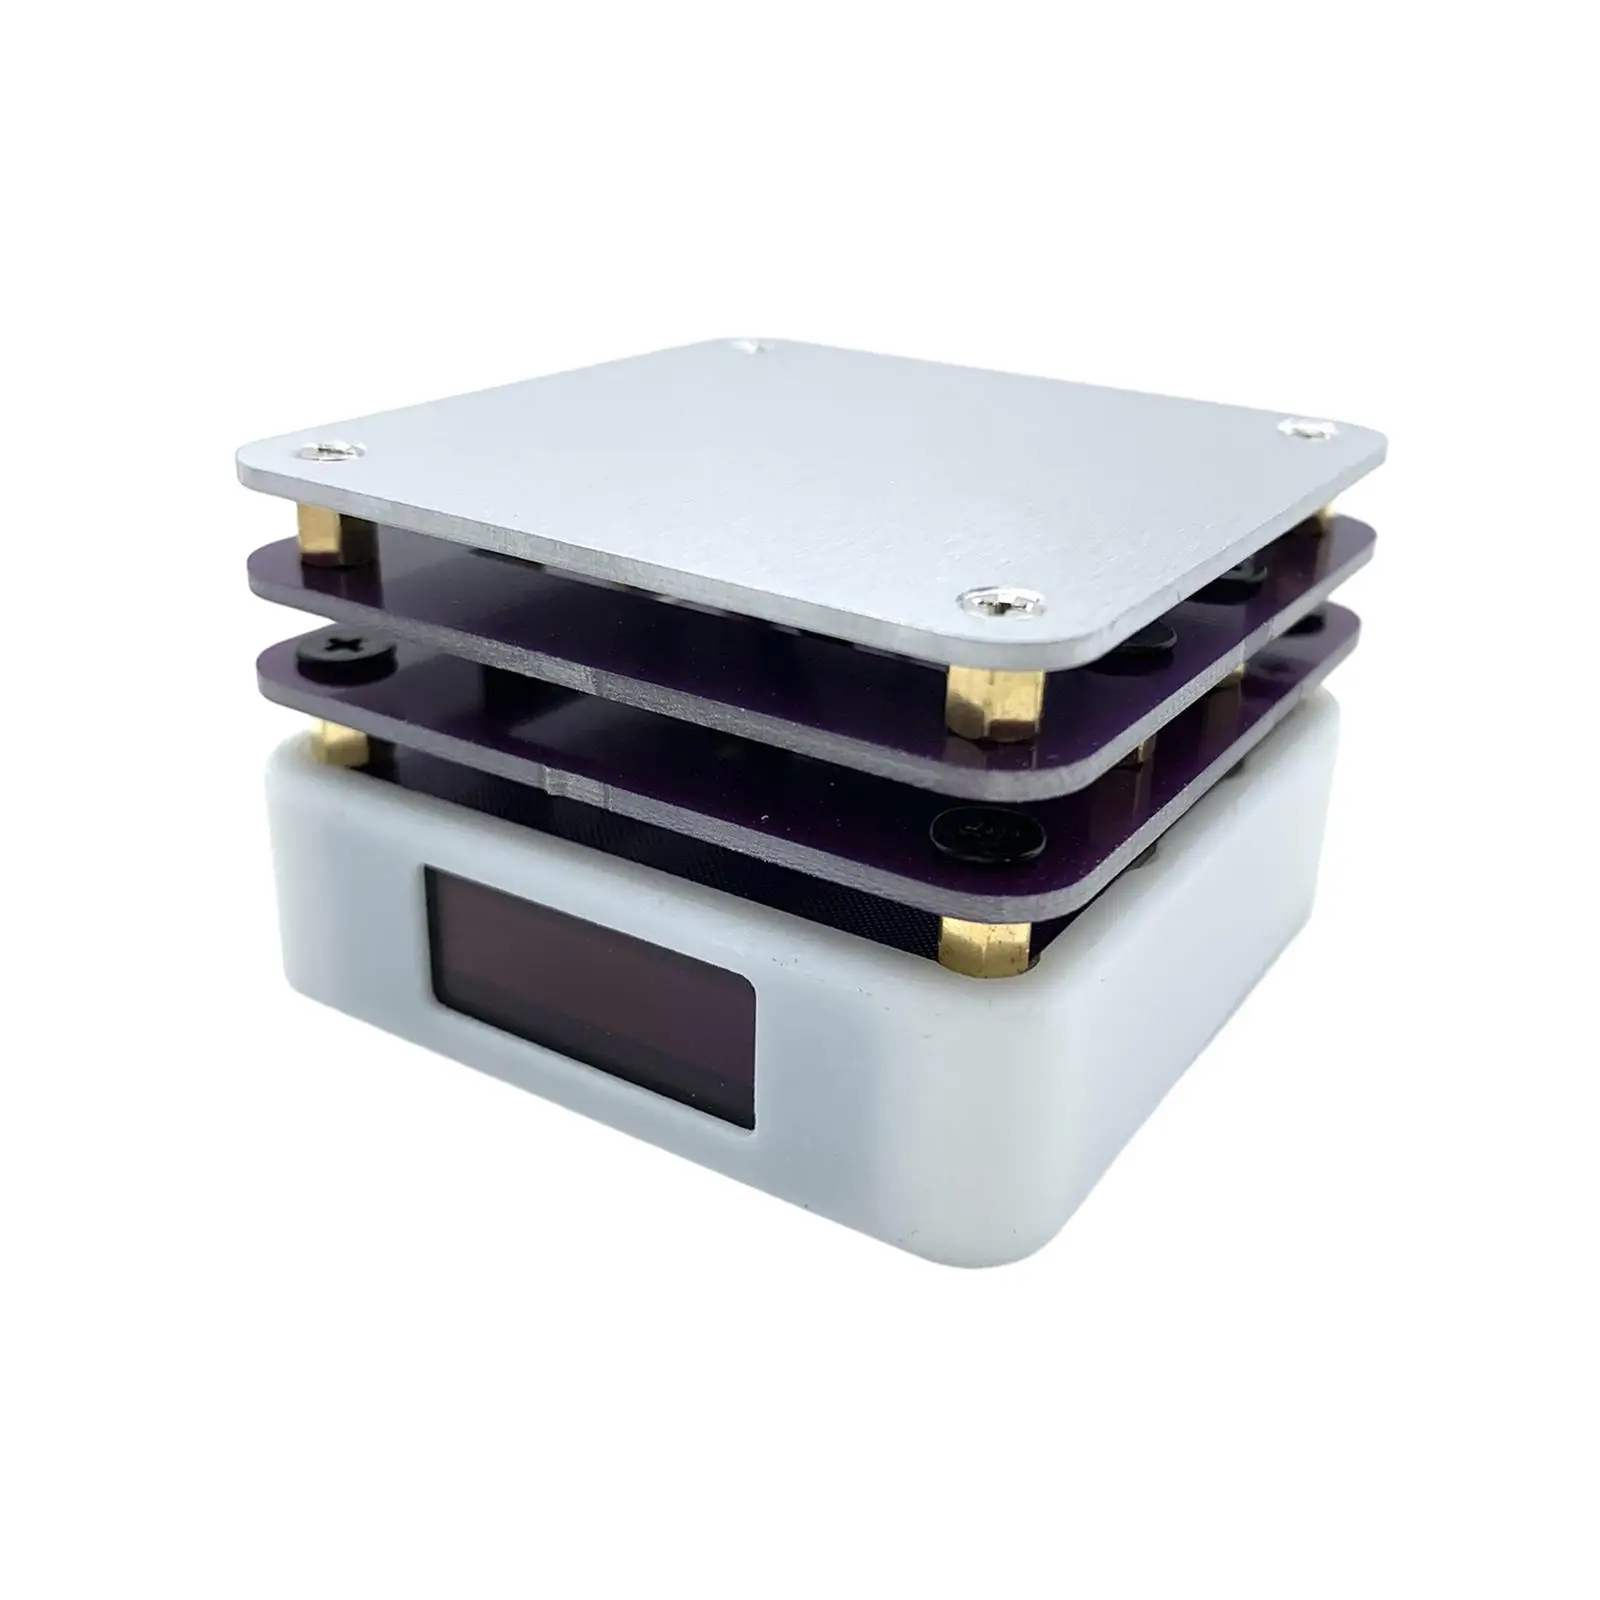 Mini Hot Plate Desoldering Repair Tool LCD Display Portable Constant Temperature Preheating Heating Station Soldering Station